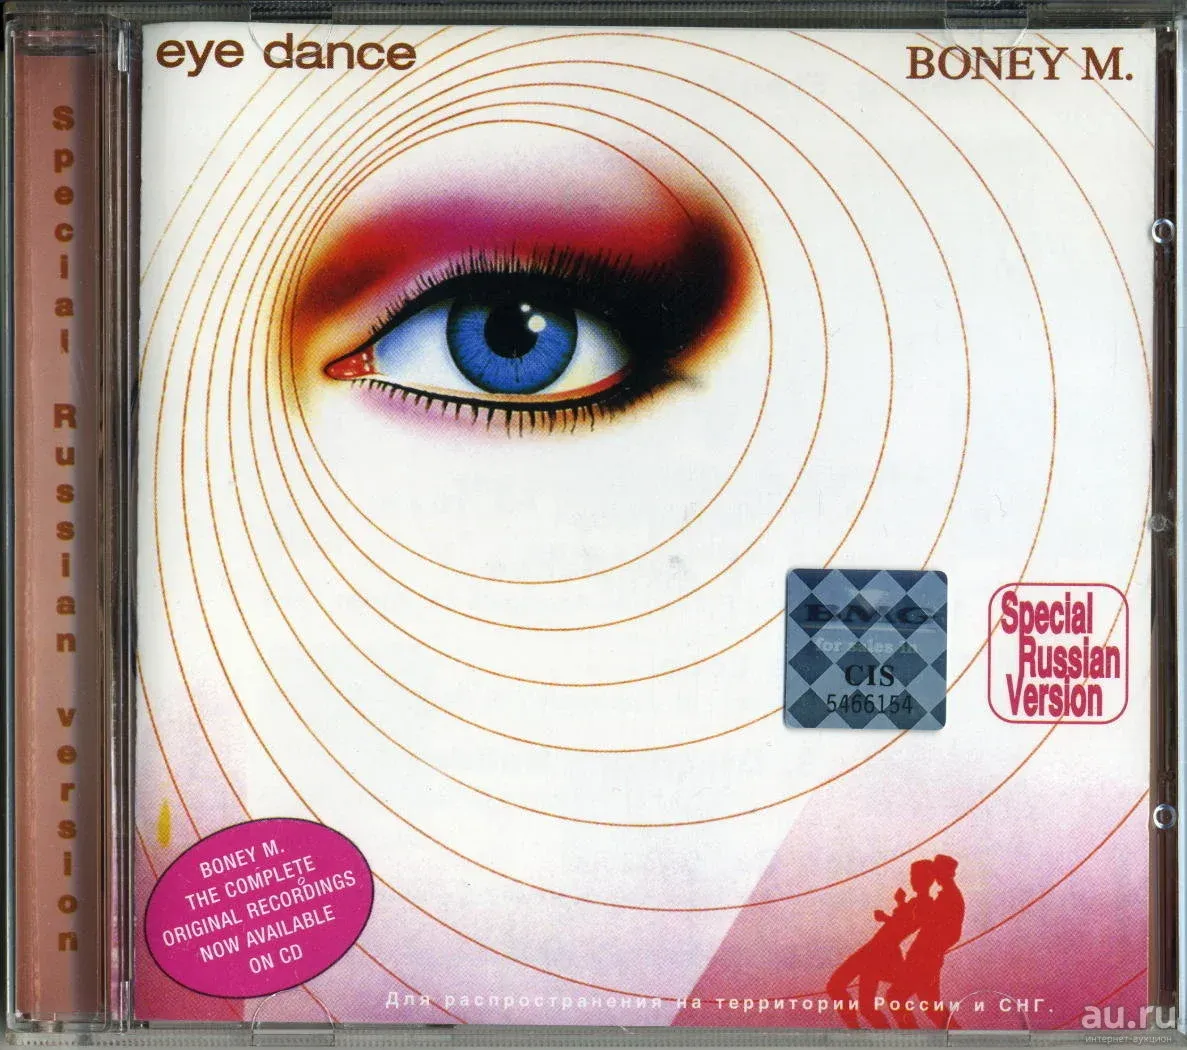 Boney m dance. Boney m Eye Dance 1985. Boney m "Eye Dance".